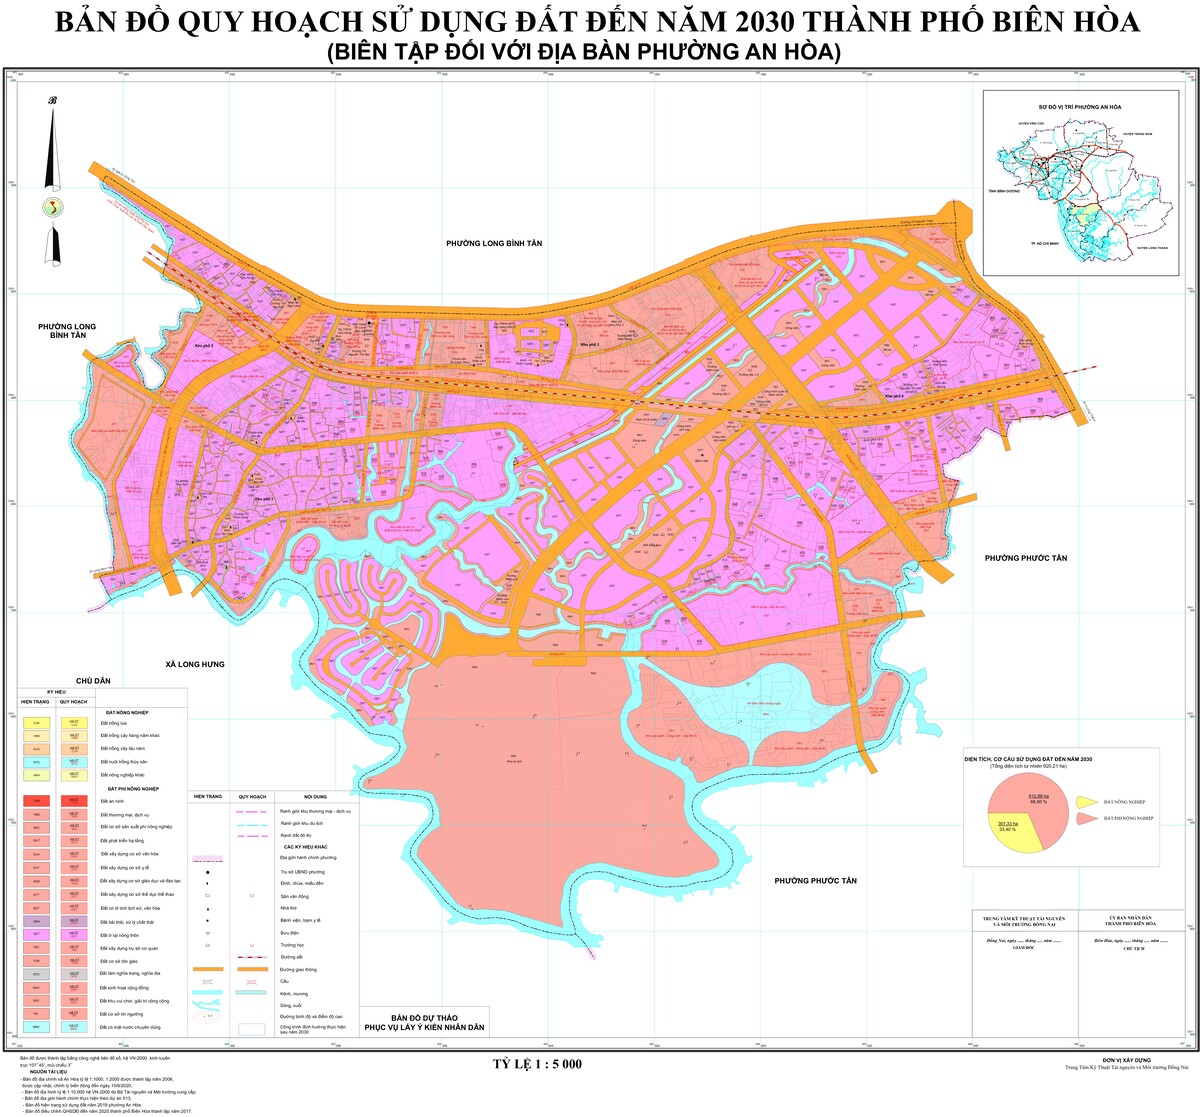 Bản đồ quy hoạch phường An Hòa, thành phố Biên Hòa, tỉnh Đồng Nai đến năm 2030